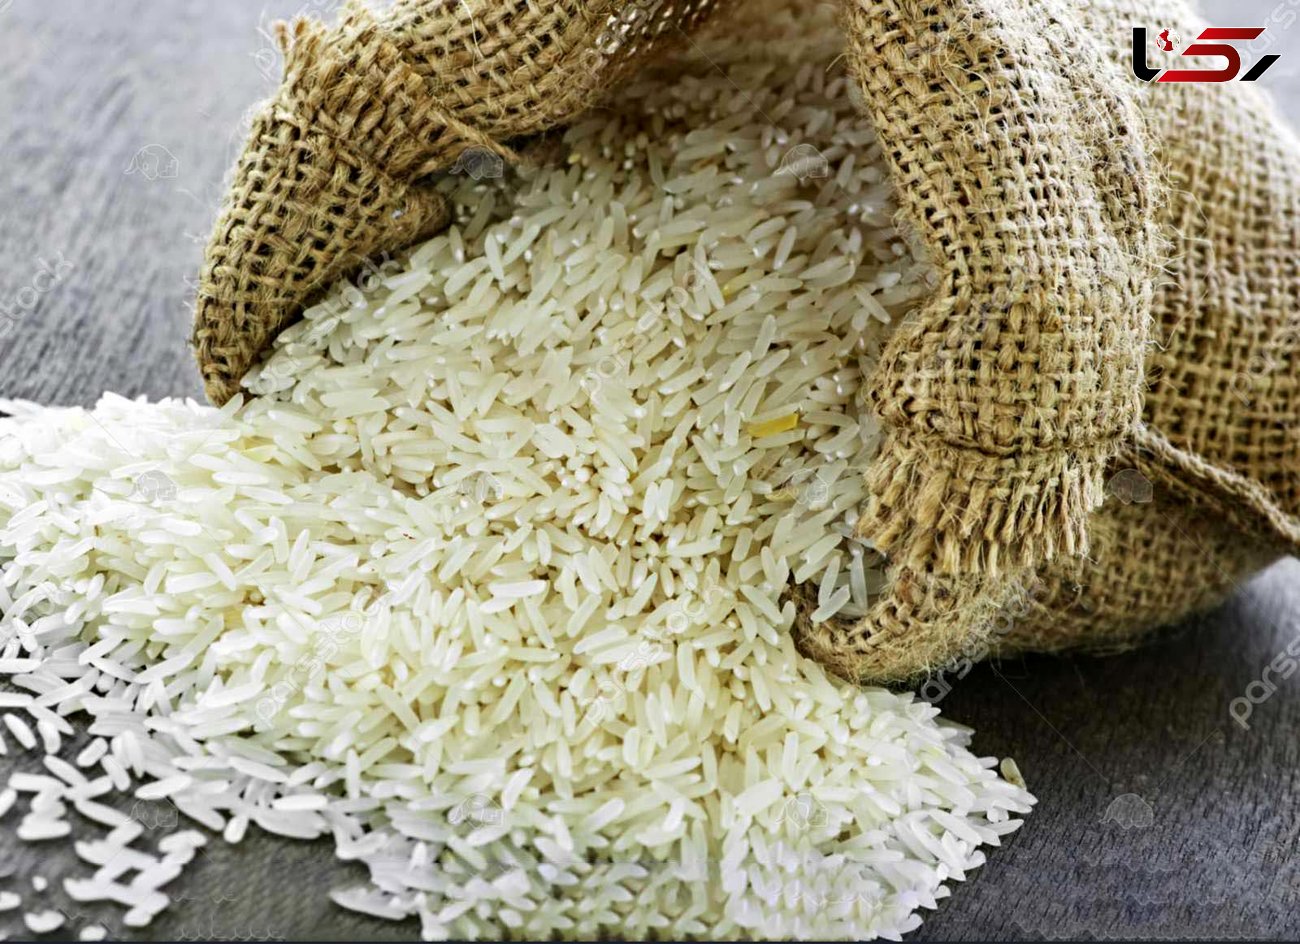 ابراهیمی: حجم واردات برنج زیاد است/ دولت نظارت بیشتری کند